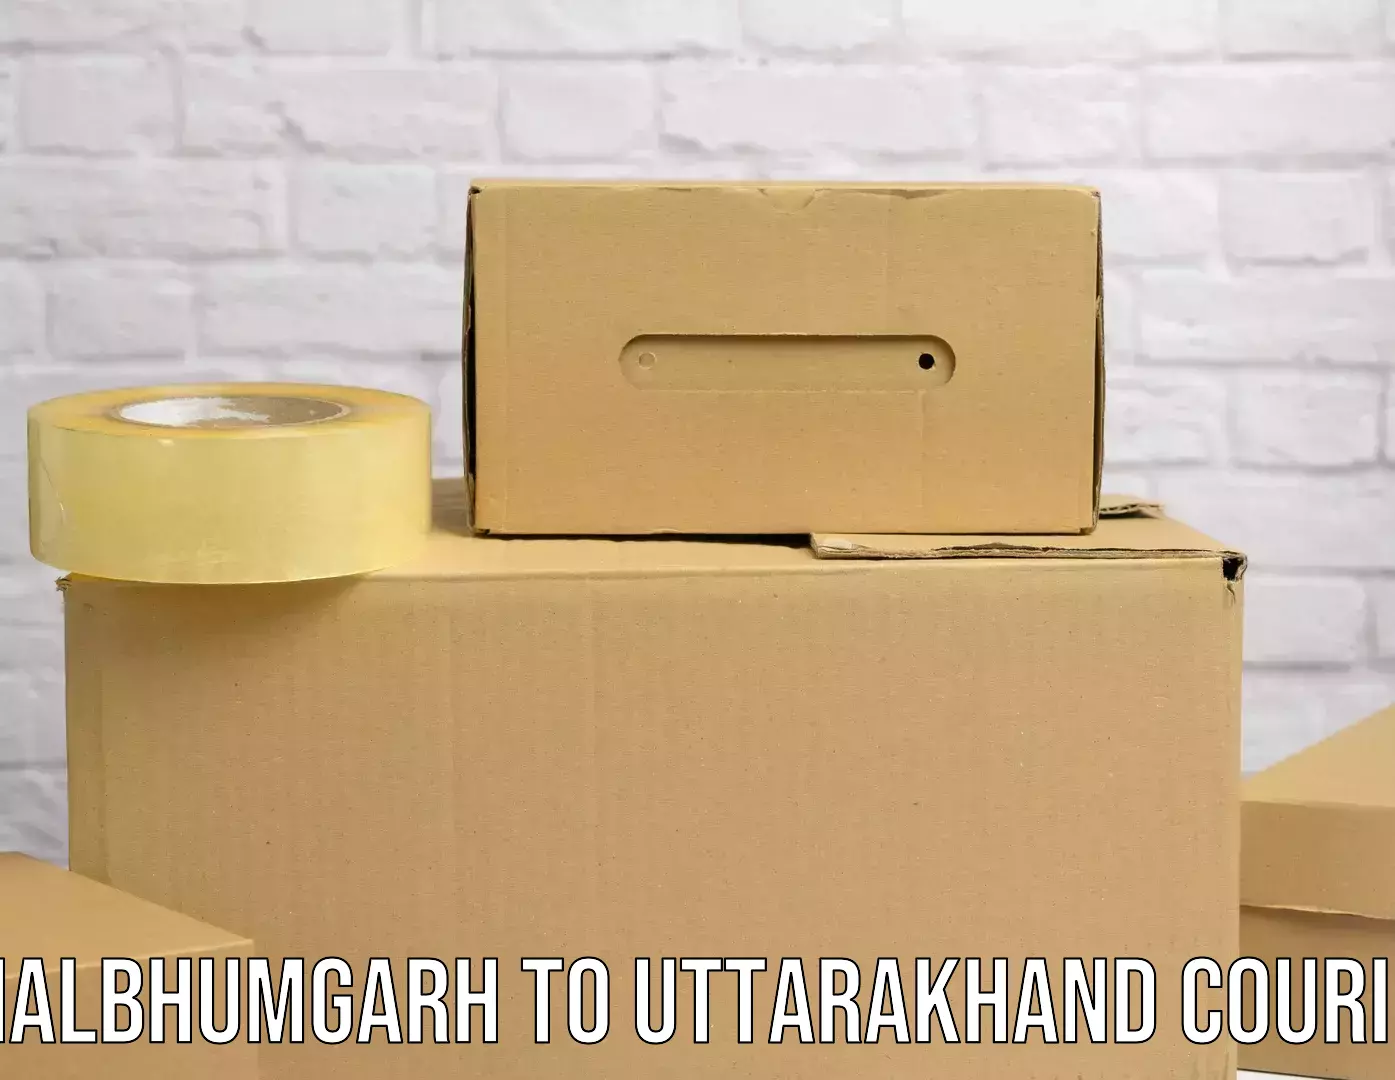 Customized delivery options Dhalbhumgarh to Karnaprayag